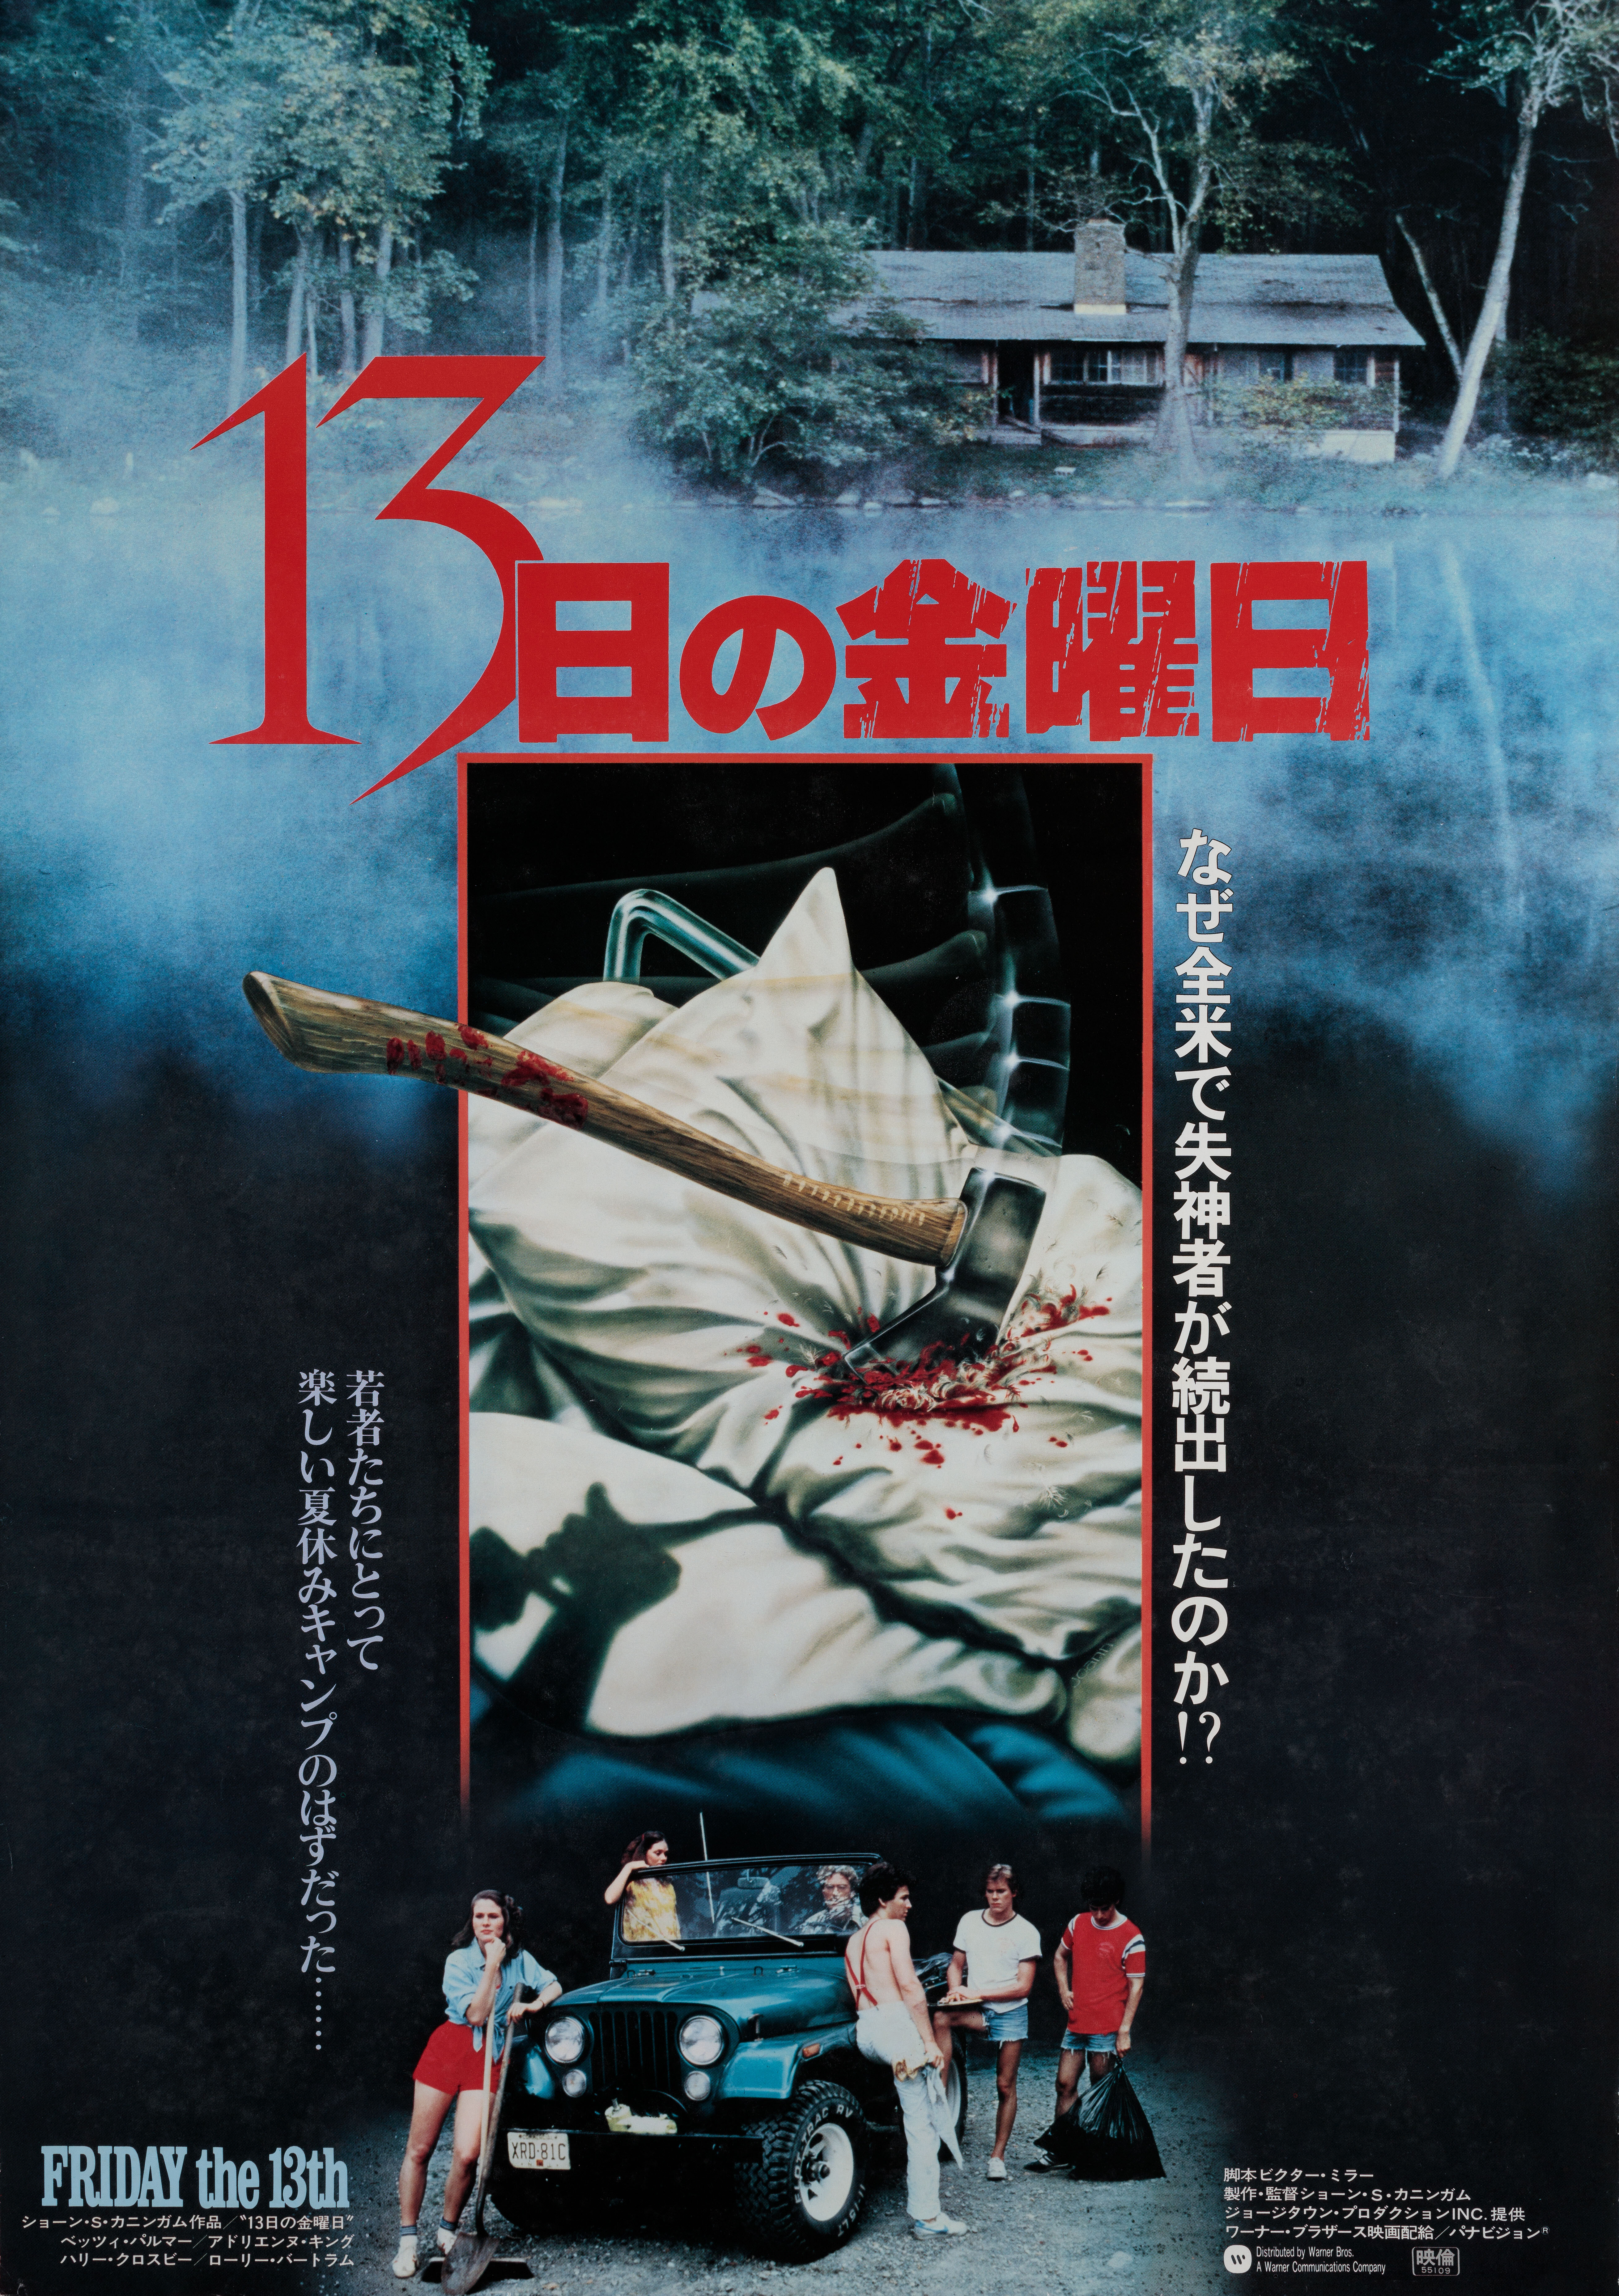 Пятница 13-е (Friday the 13th, 1980), режиссёр Шон С. Каннингем, японский постер к фильму (ужасы, 1980 год)